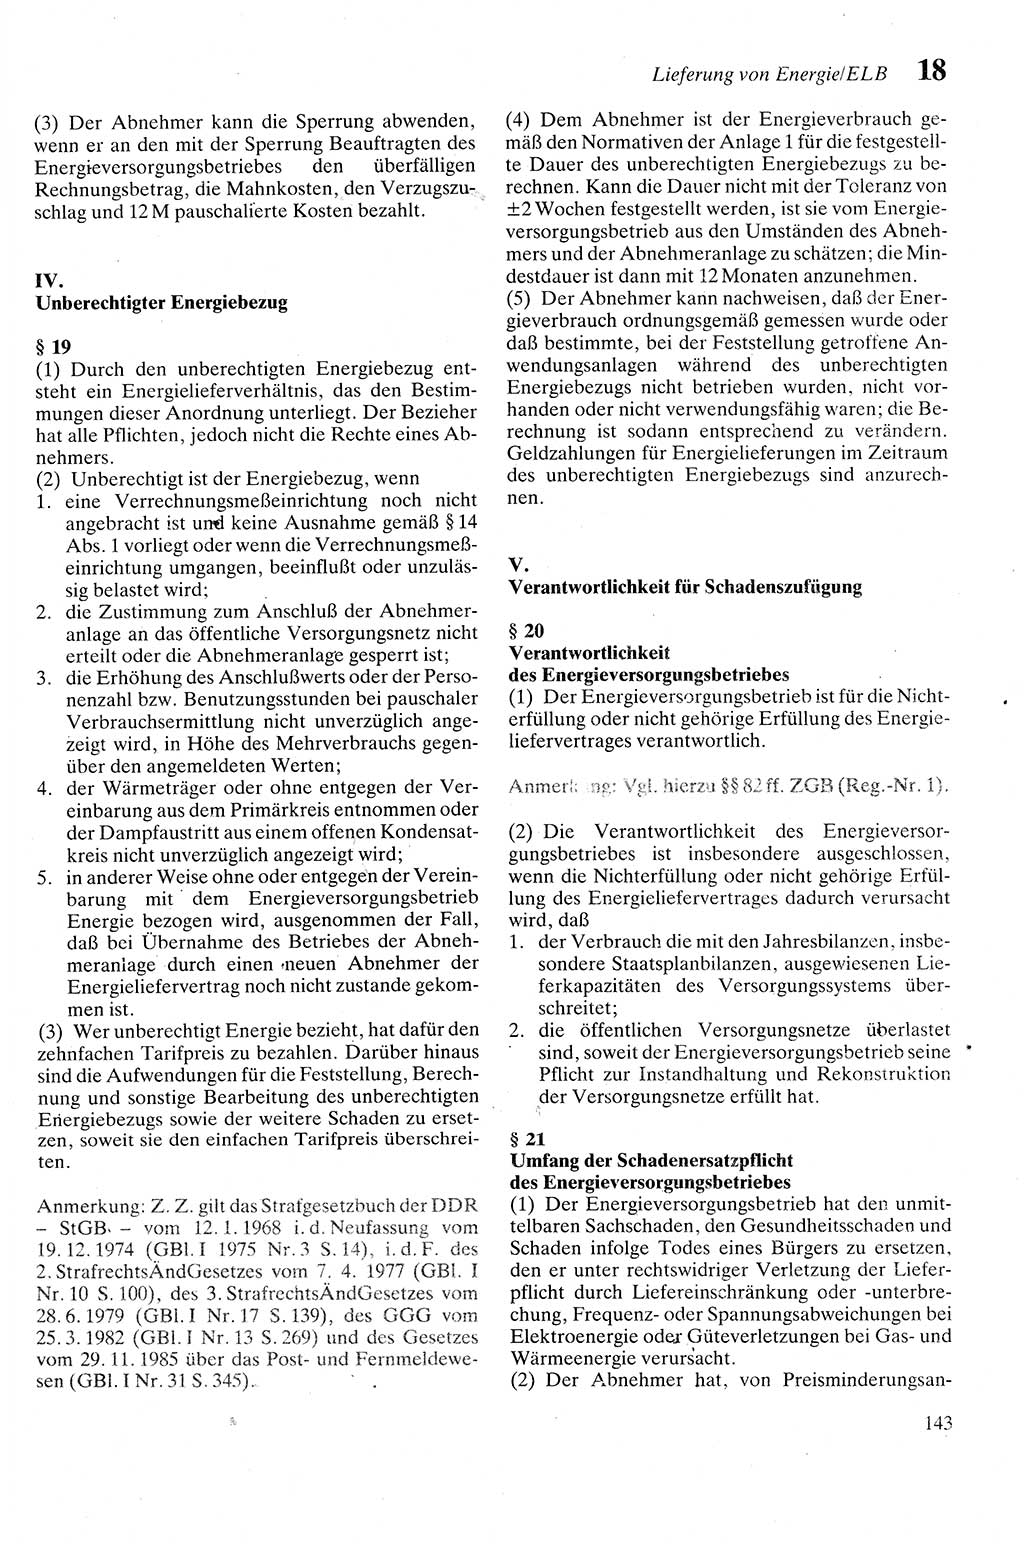 Zivilgesetzbuch (ZVG) sowie angrenzende Gesetze und Bestimmungen [Deutsche Demokratische Republik (DDR)] 1975, Seite 143 (ZGB Ges. Best. DDR 1975, S. 143)